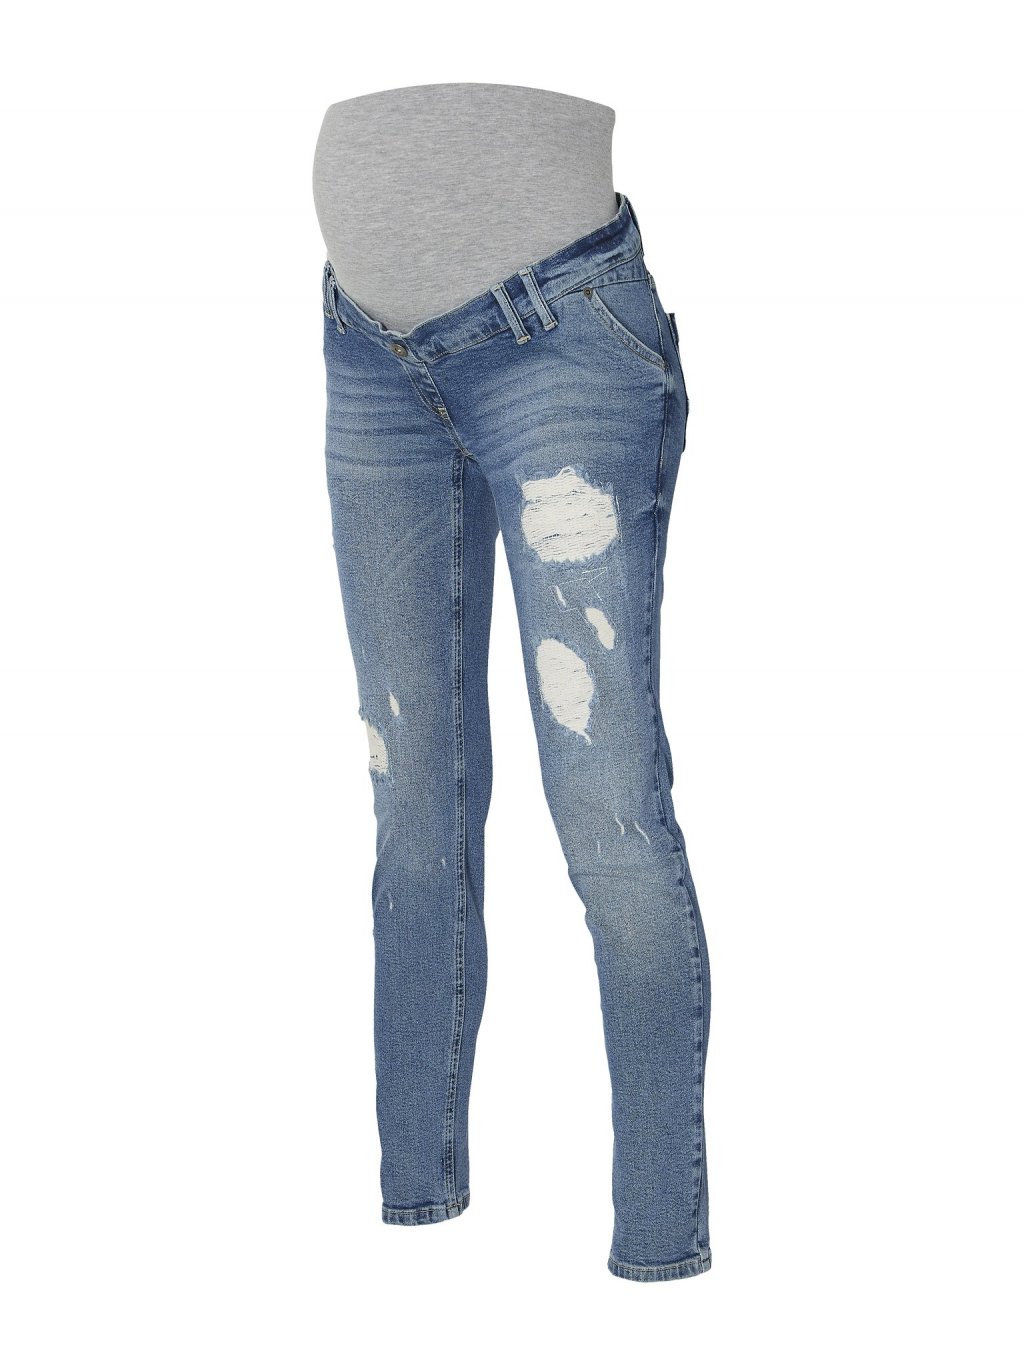 Těhotenské džíny světle modré (Velikost 33)